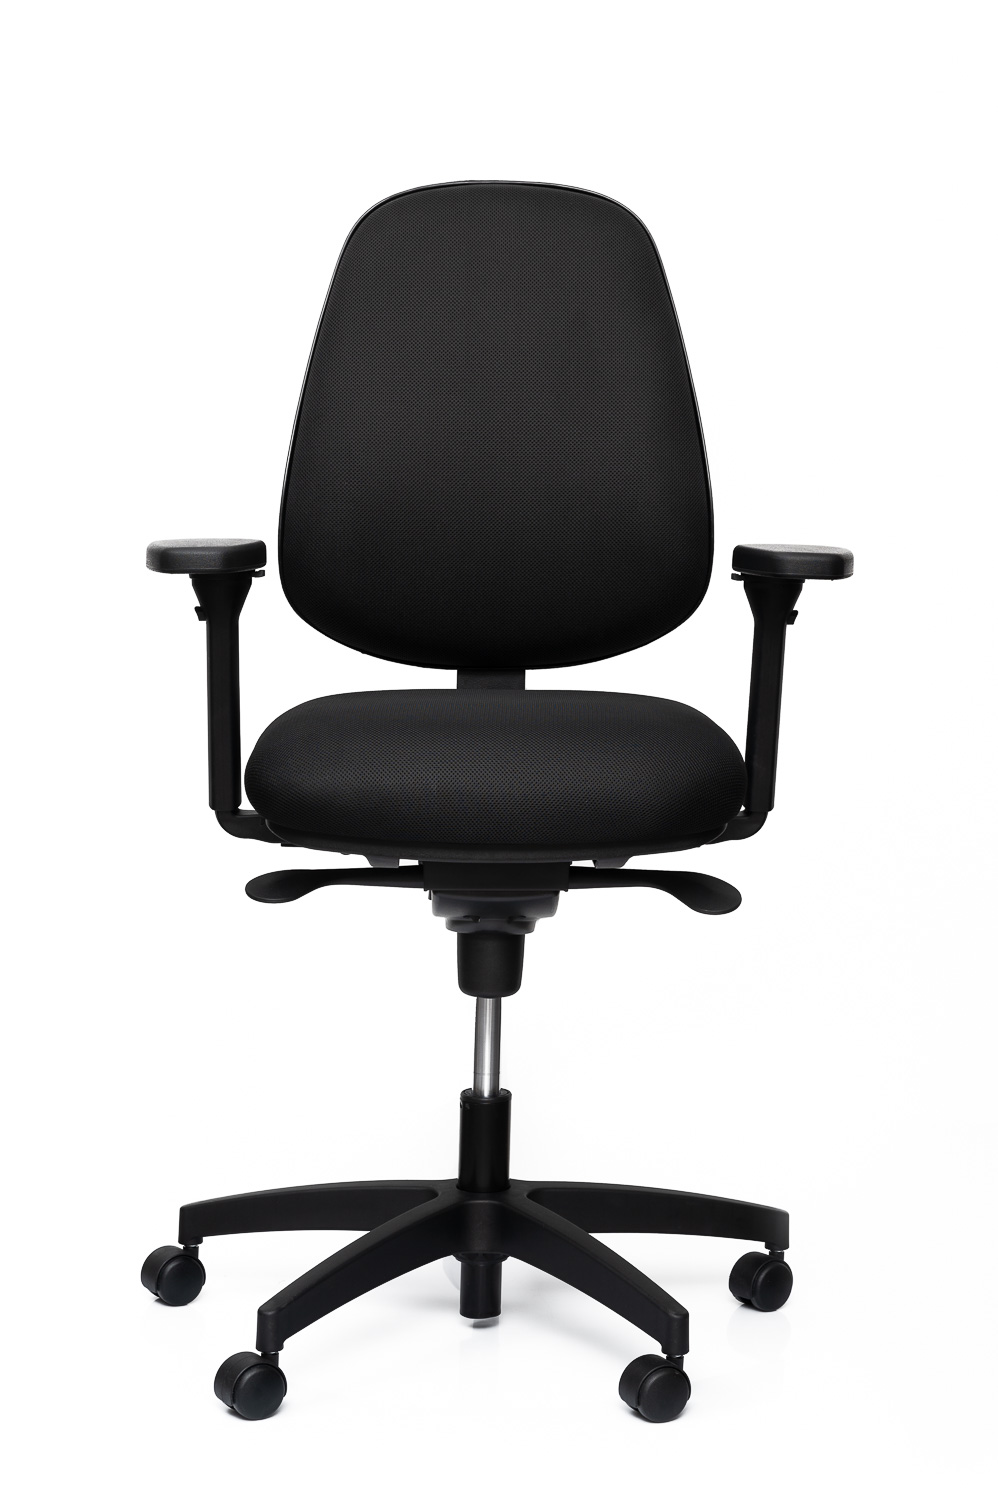 Fauteuil ergonomique Productive Chair